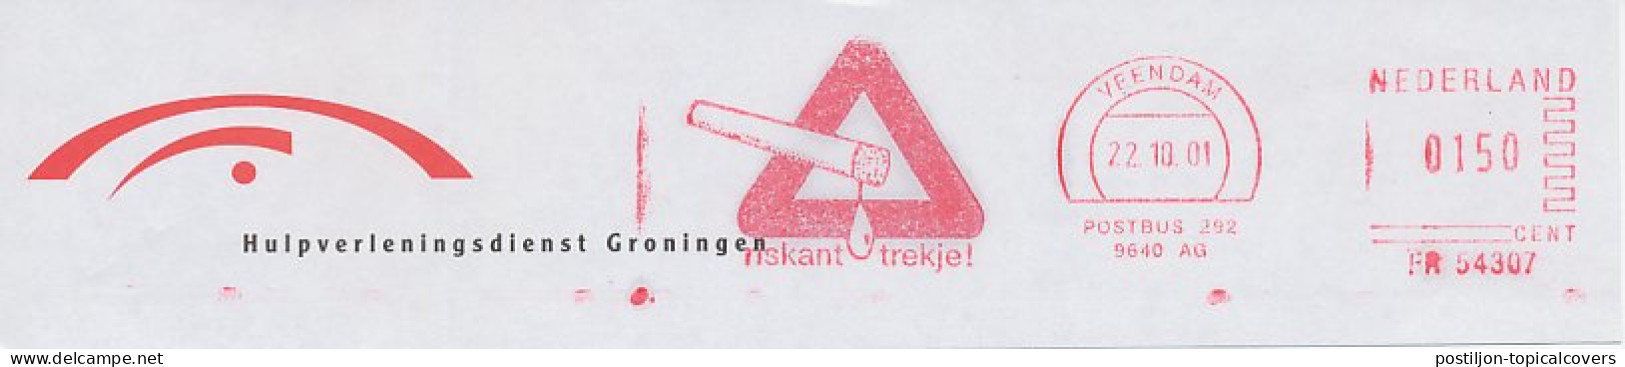 Meter Top Cut Netherlands 2001 Cigarette - Risky Drag - Tobacco